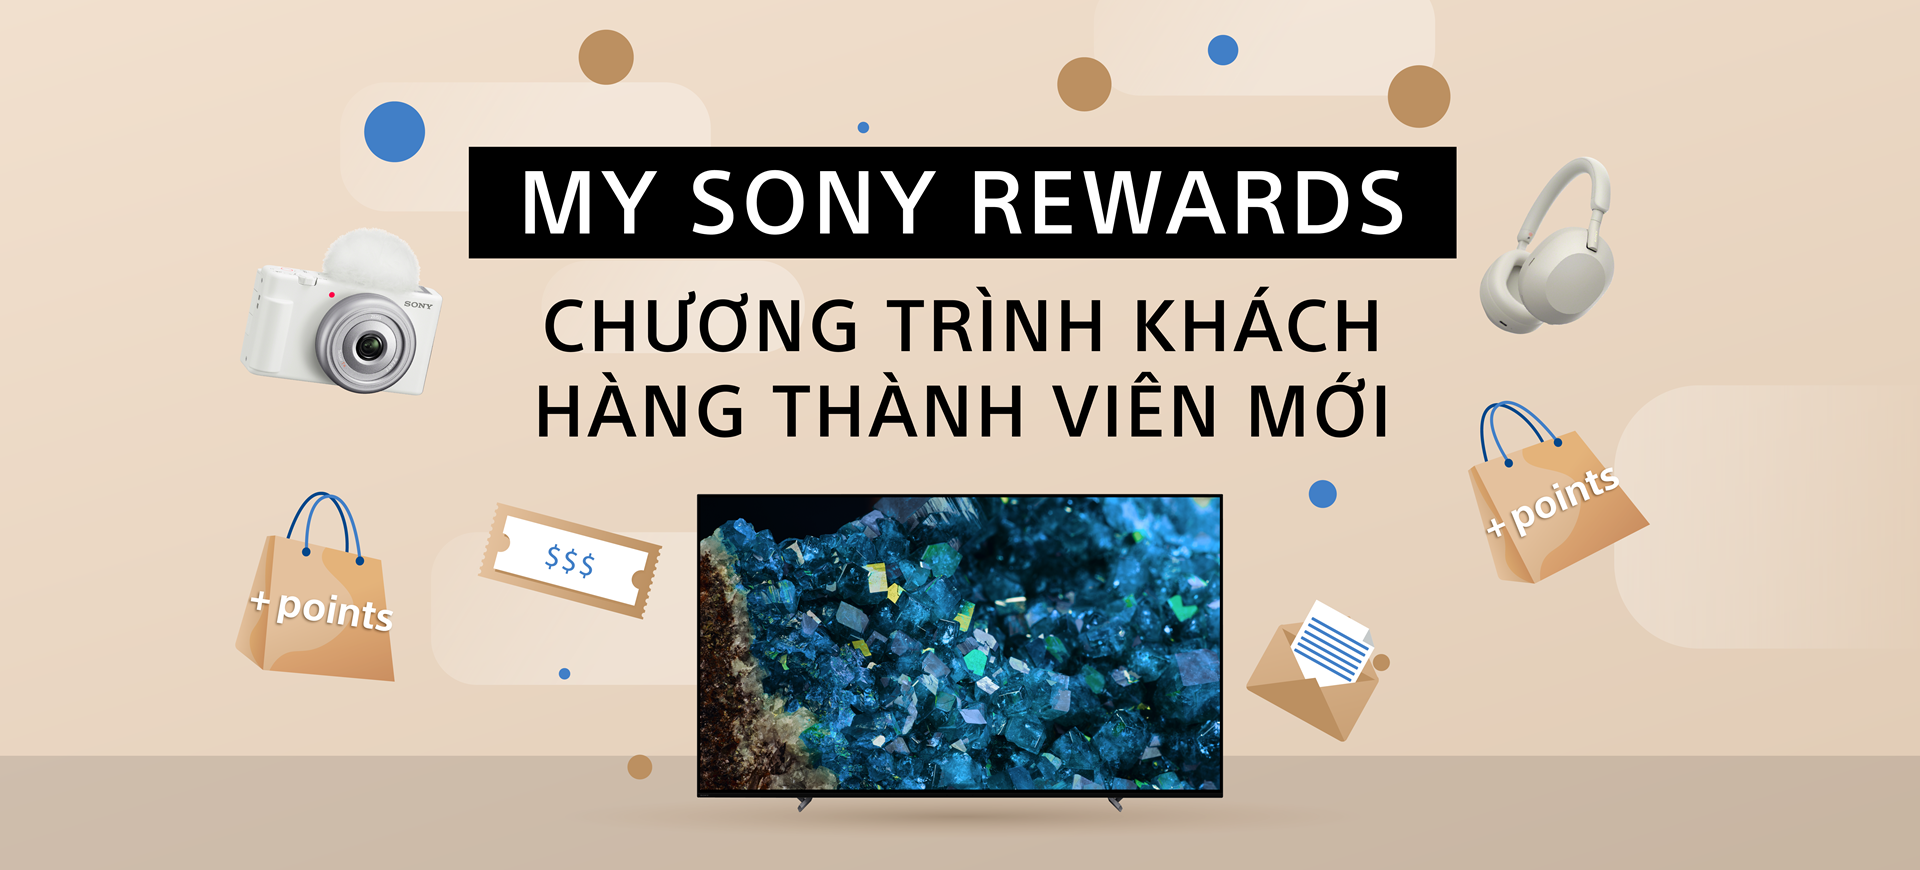 My Sony Rewards - Chương Trình Khách Hàng Thành Viên Mới